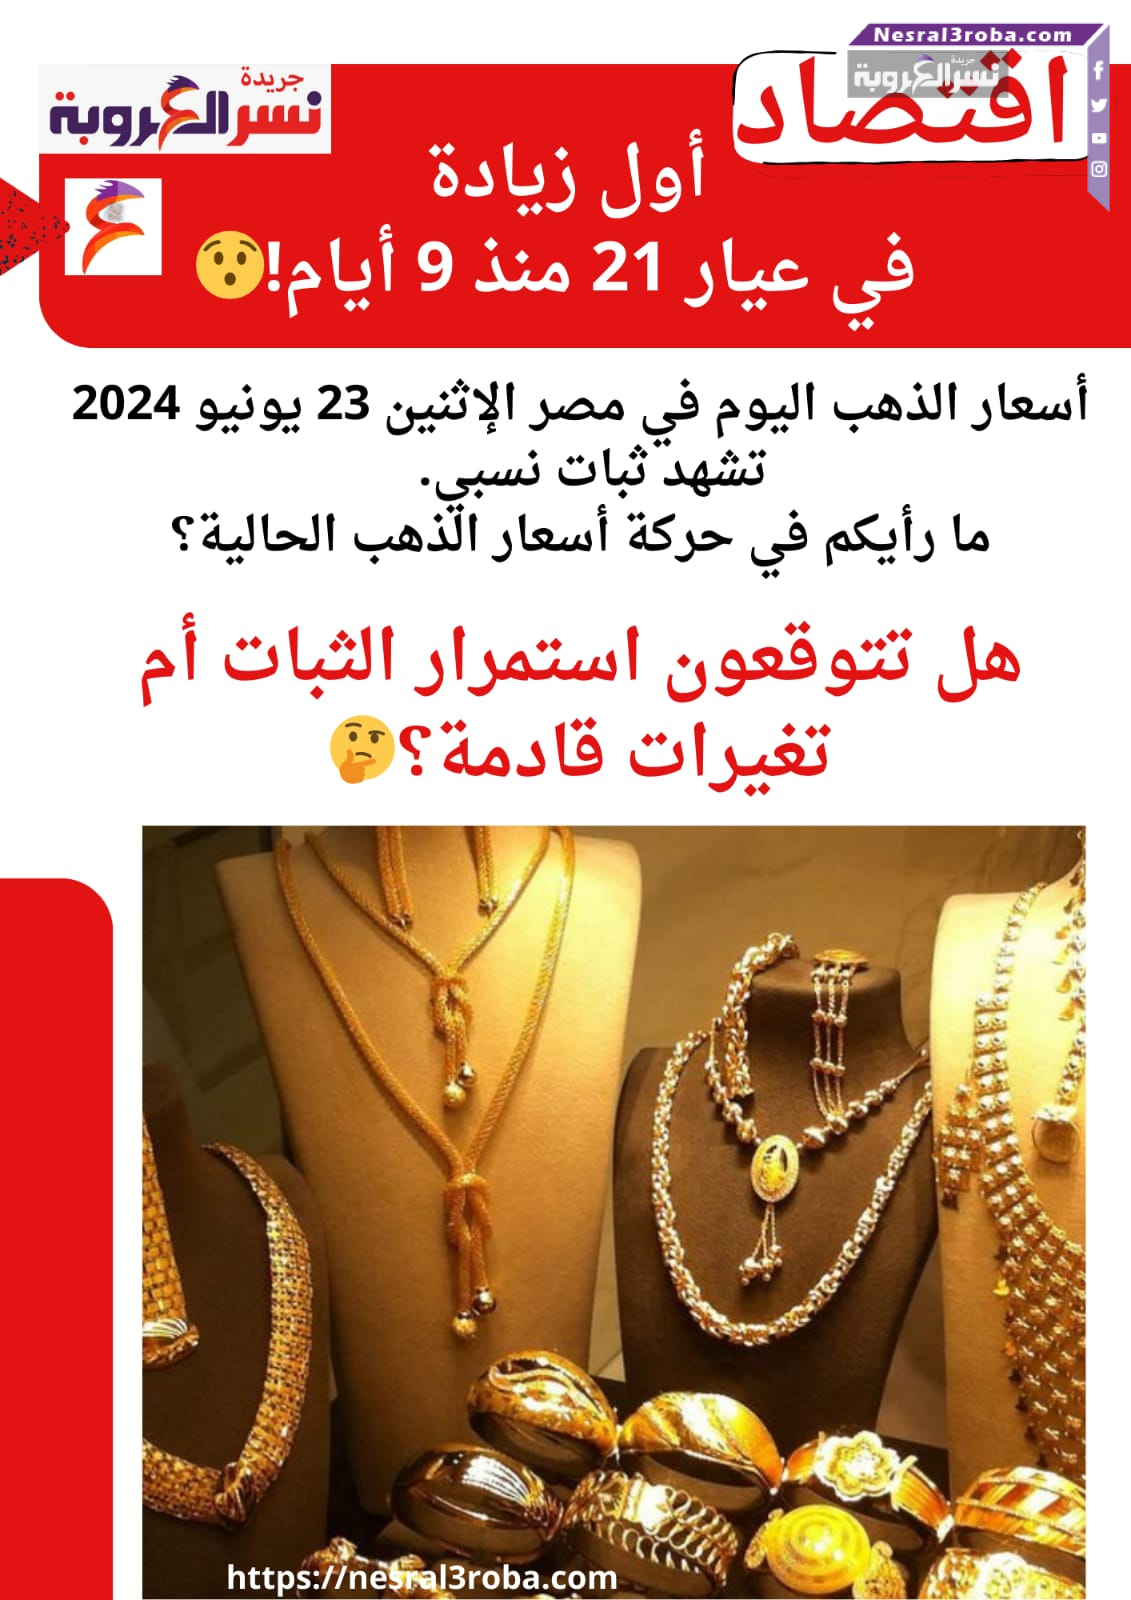 أسعار الذهب اليوم في مصر الإثنين 23 يونيو 2024 .ما رأيكم في حركة أسعار الذهب الحالية؟